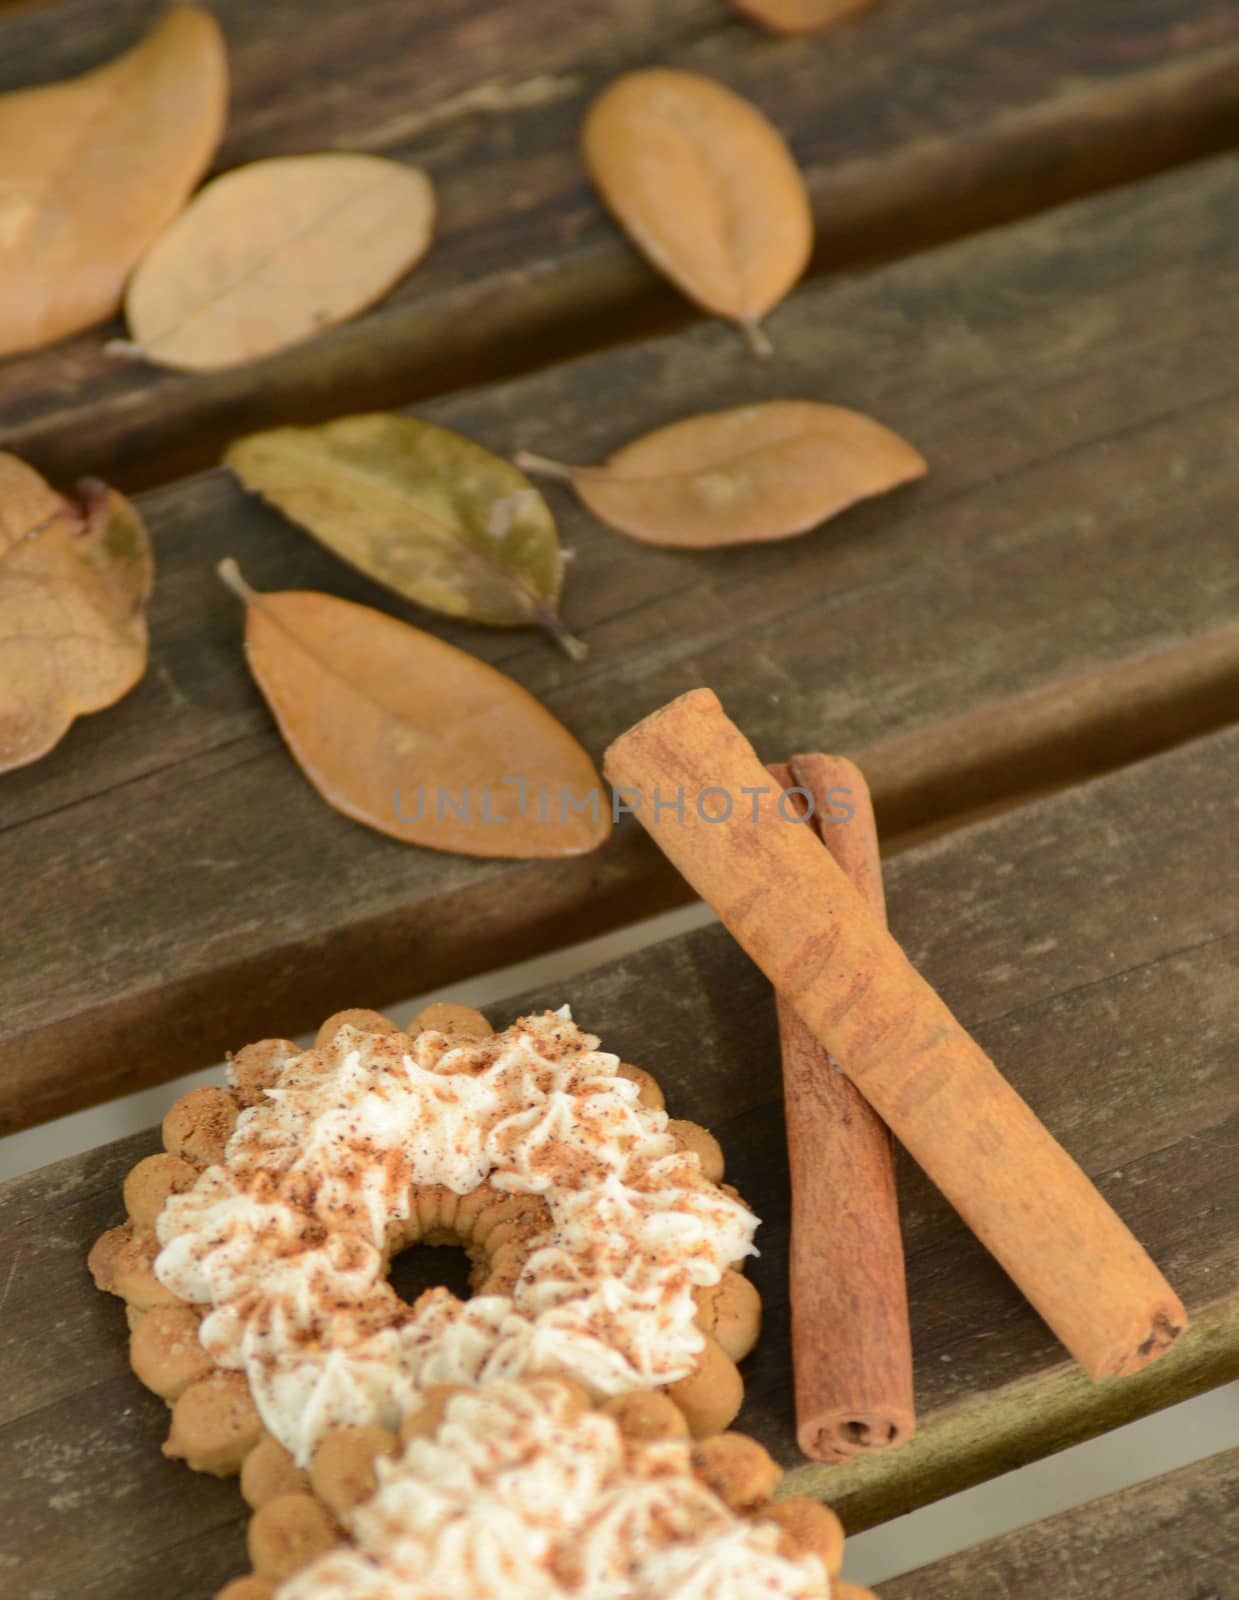 cinnamon cookies on wood table with autumn leaves